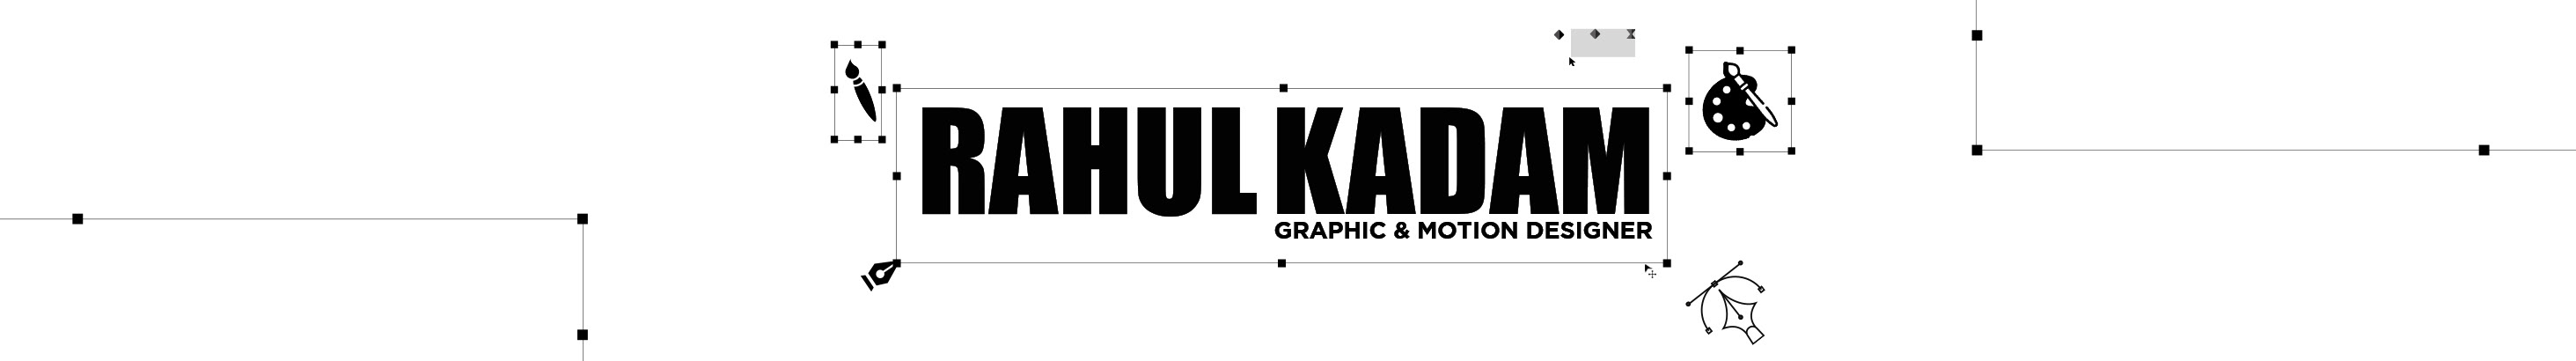 Profil-Banner von Rahul kadam